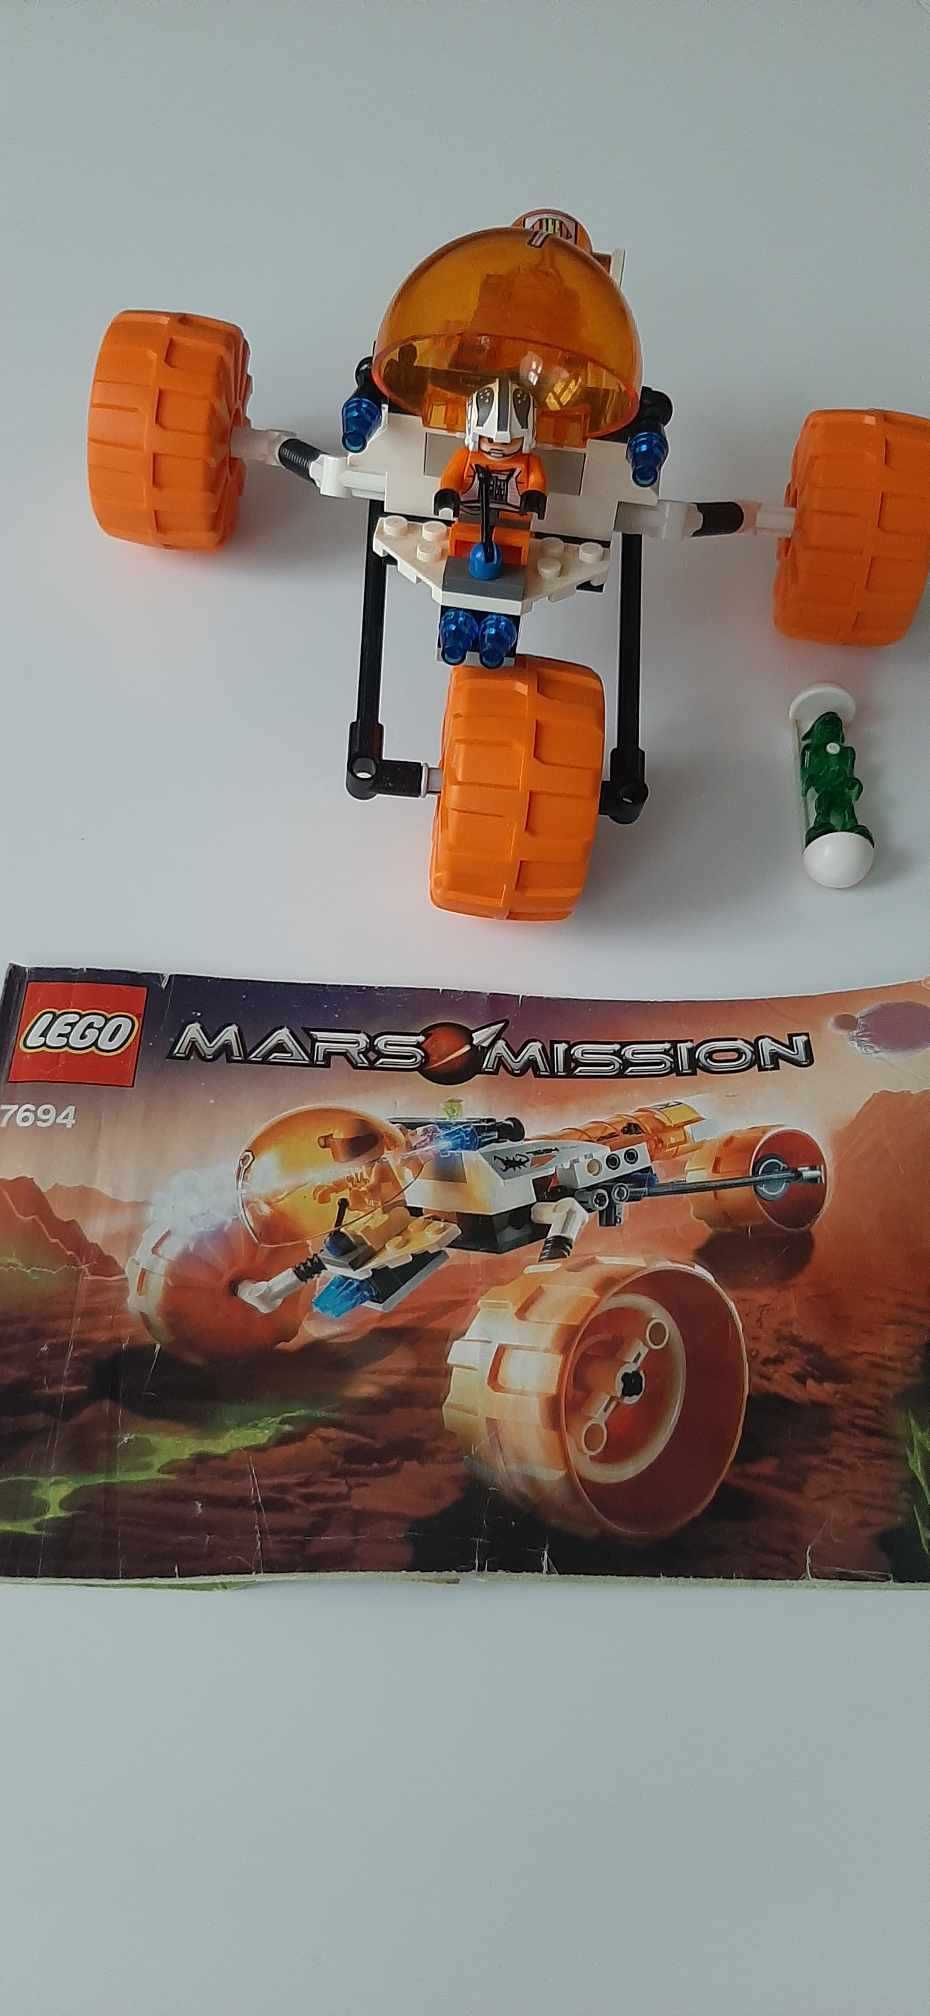 Zestaw Lego 7694 trójkołowiec Mars Mission